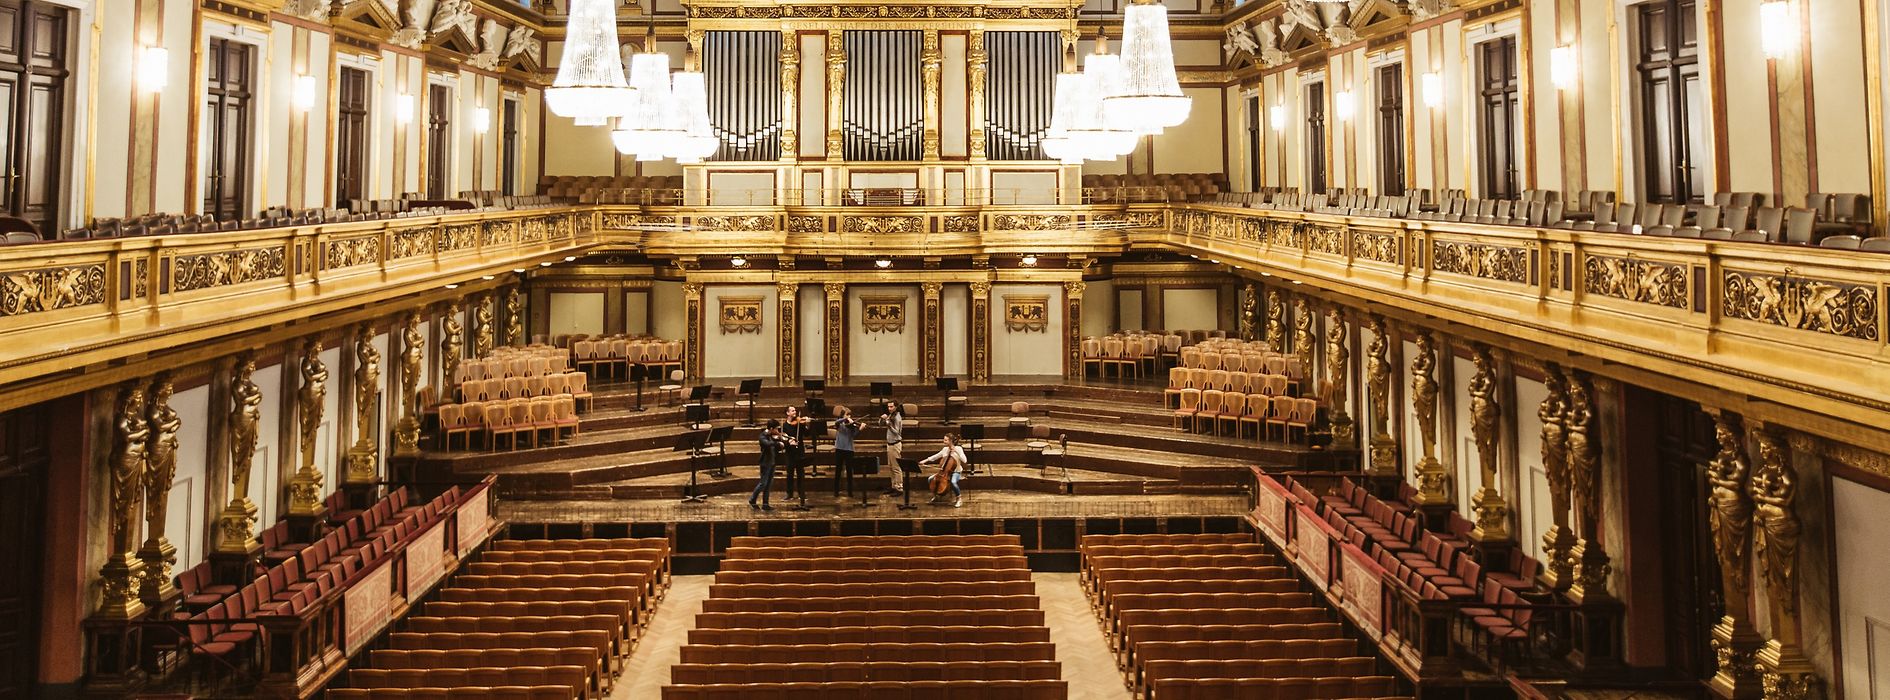 Musikverein Vienna, Grande salle (salle dorée)